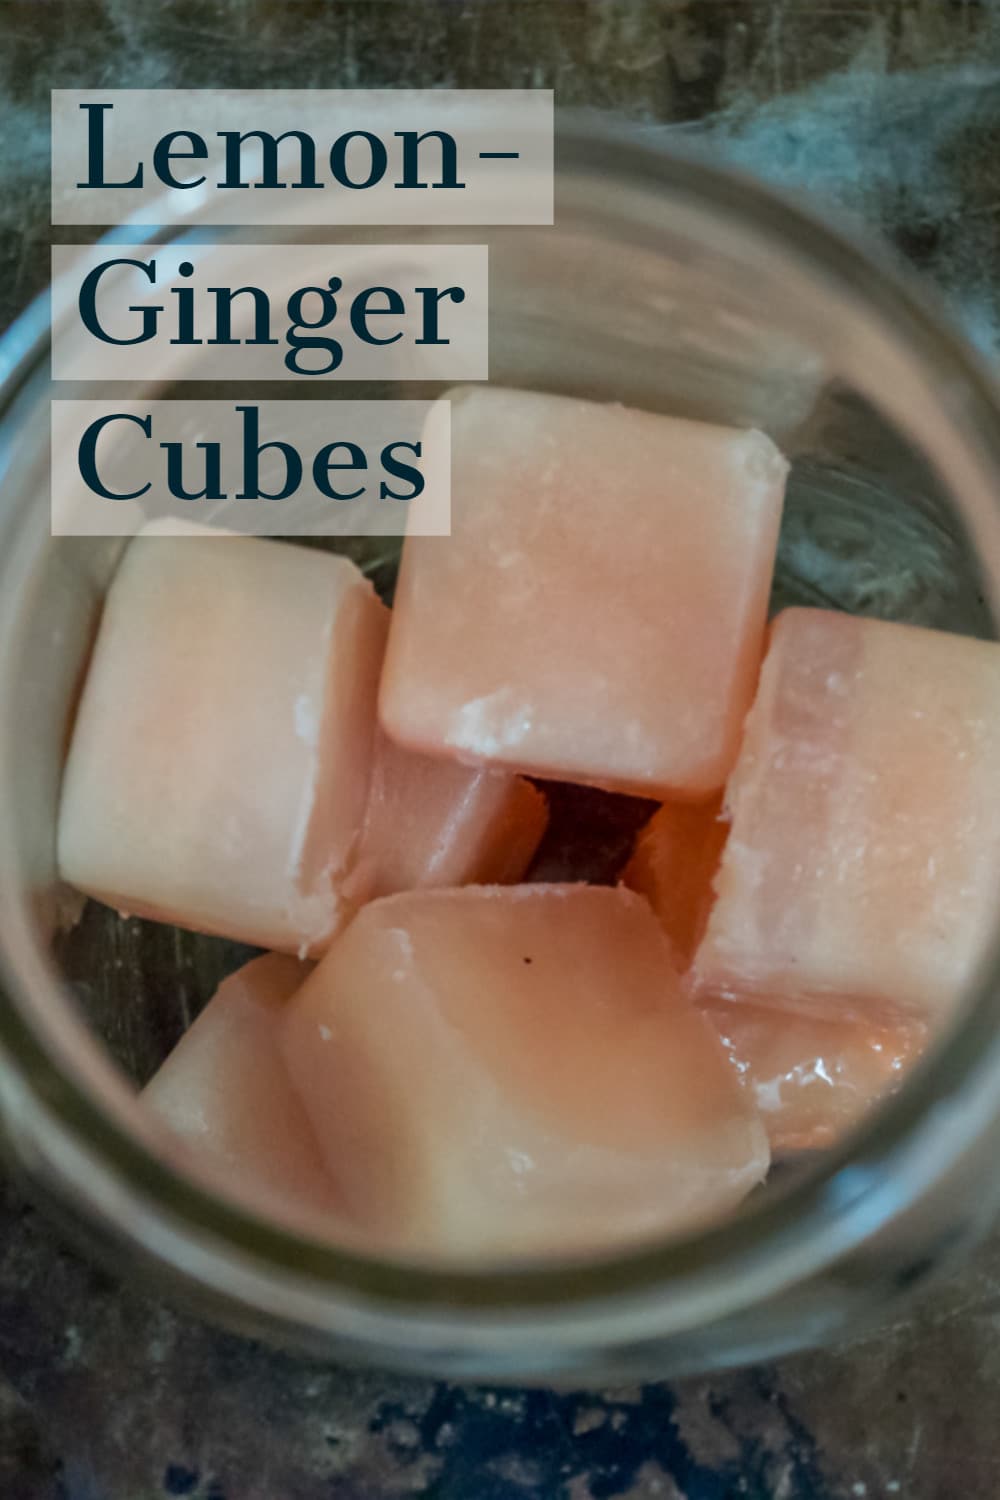 lemon-ginger cubes in a jar